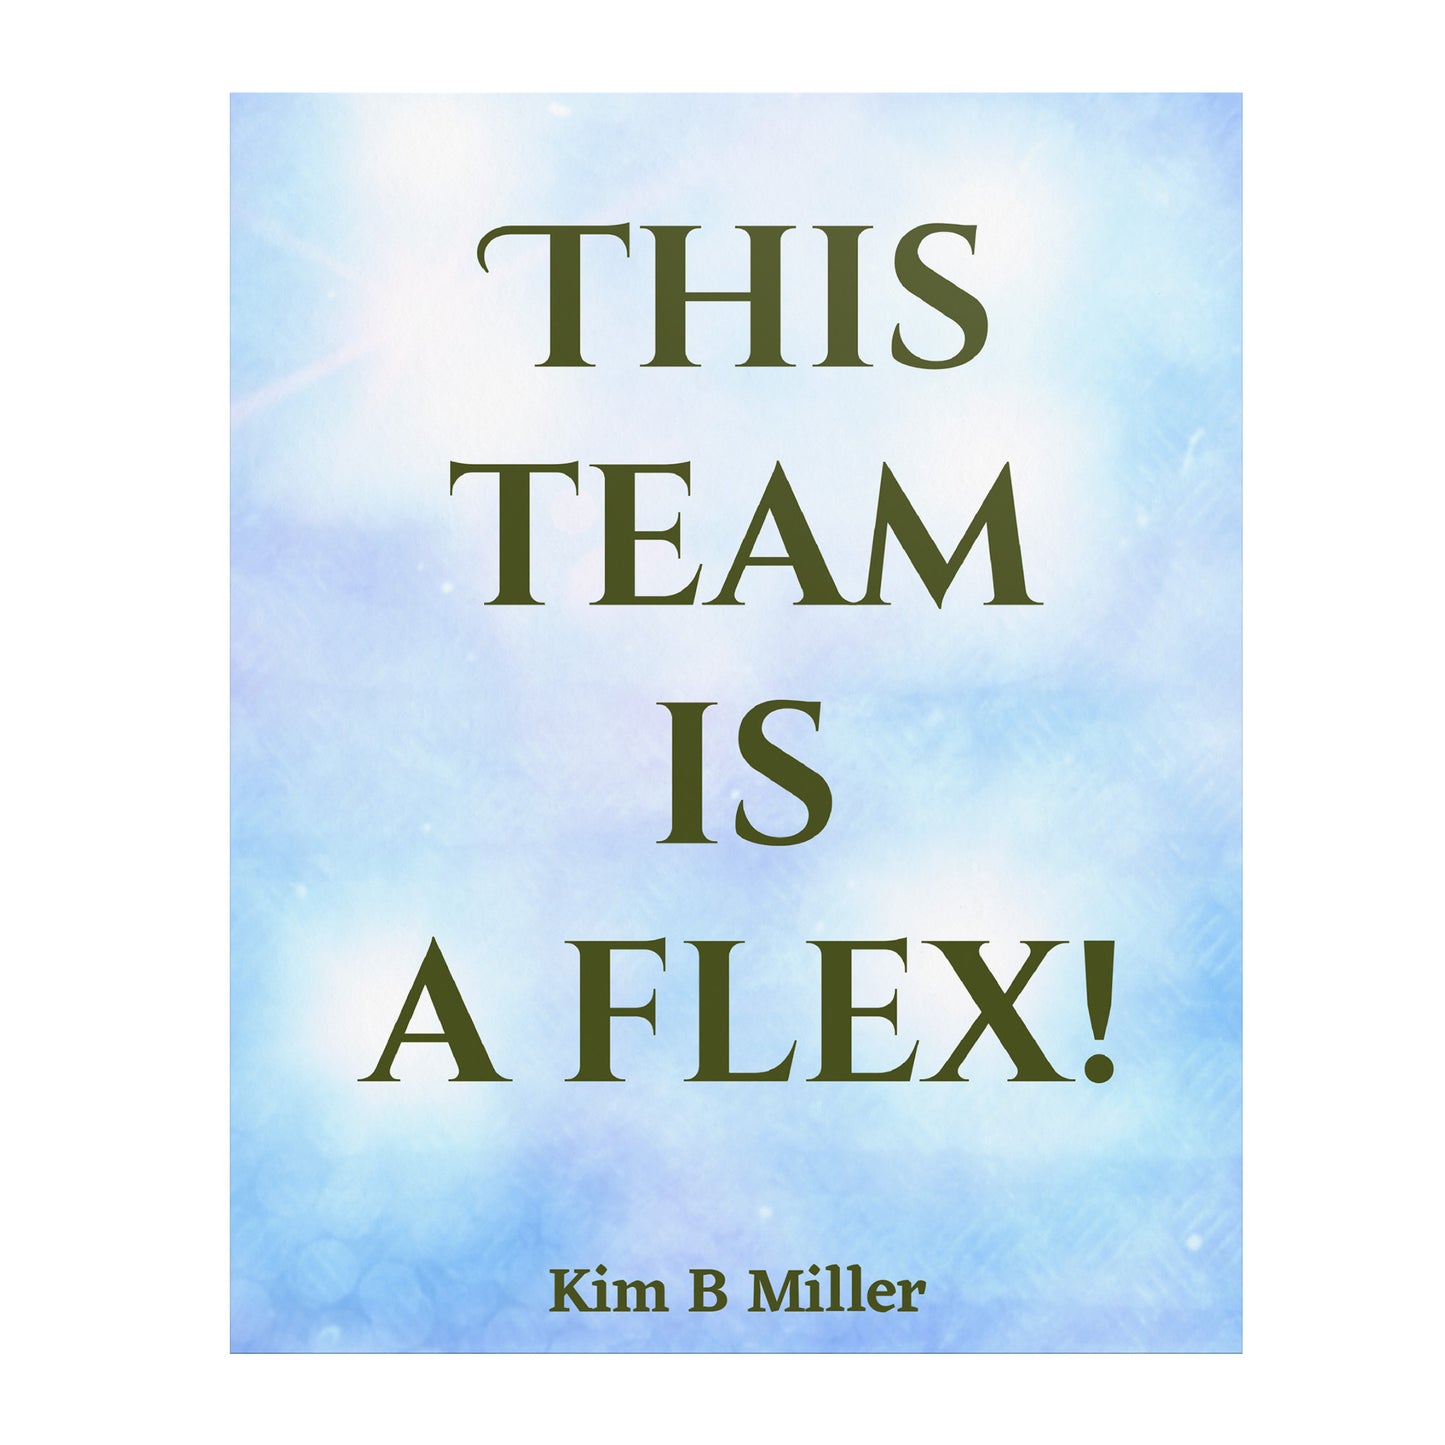 Team Flex Poster: 8" x 10"